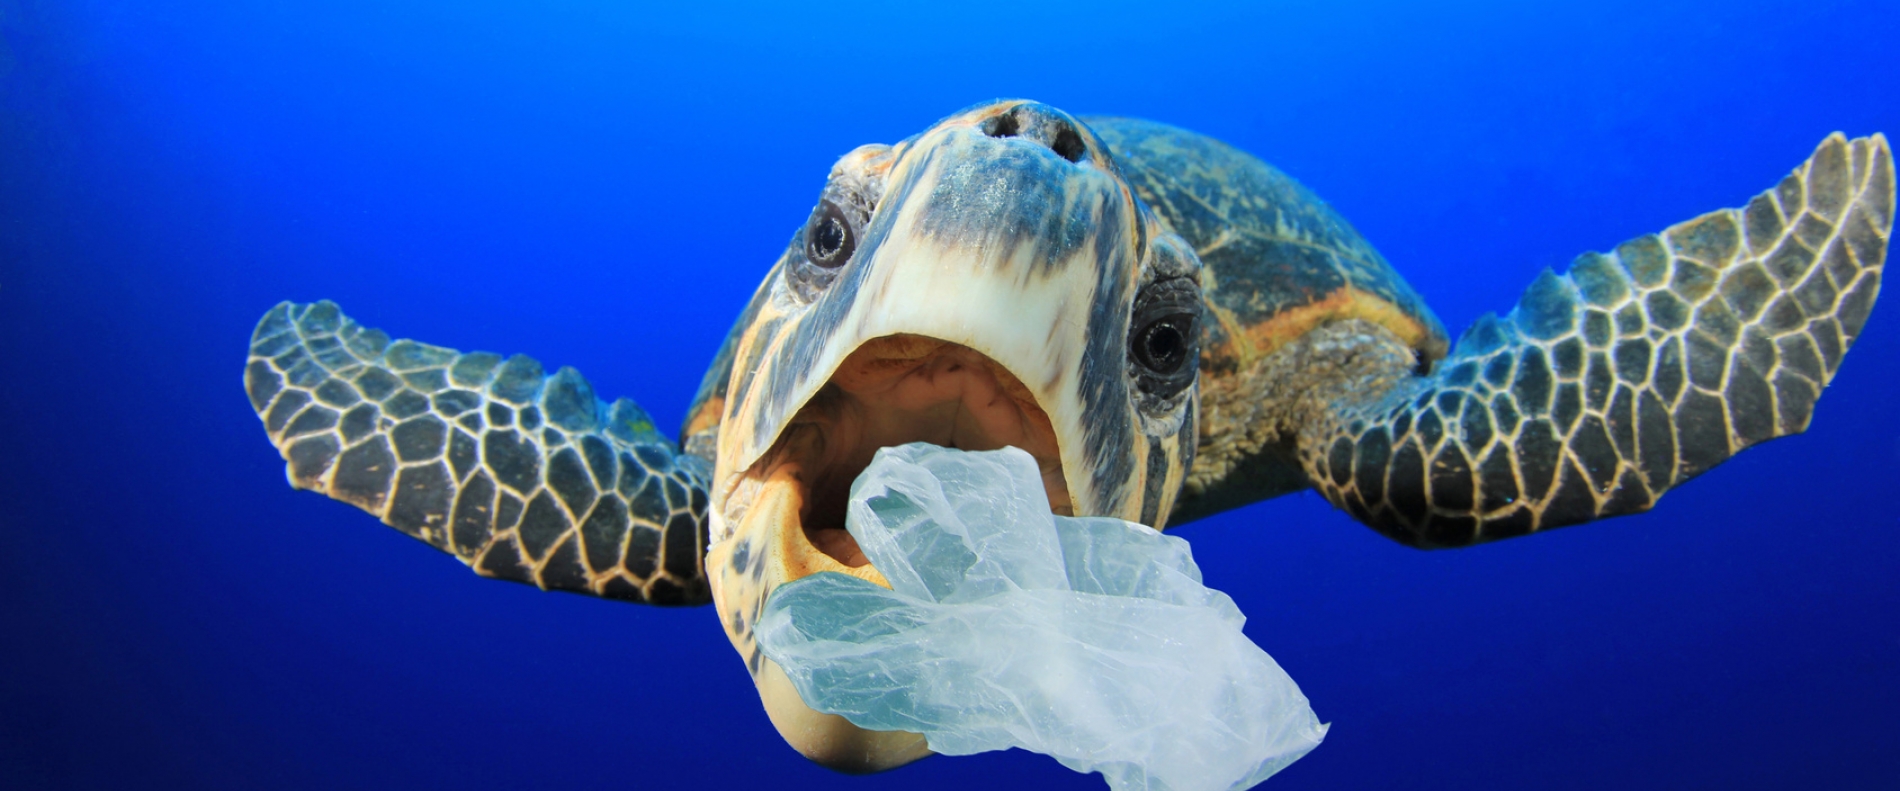 Plastik niszczy życie na naszej planecie!